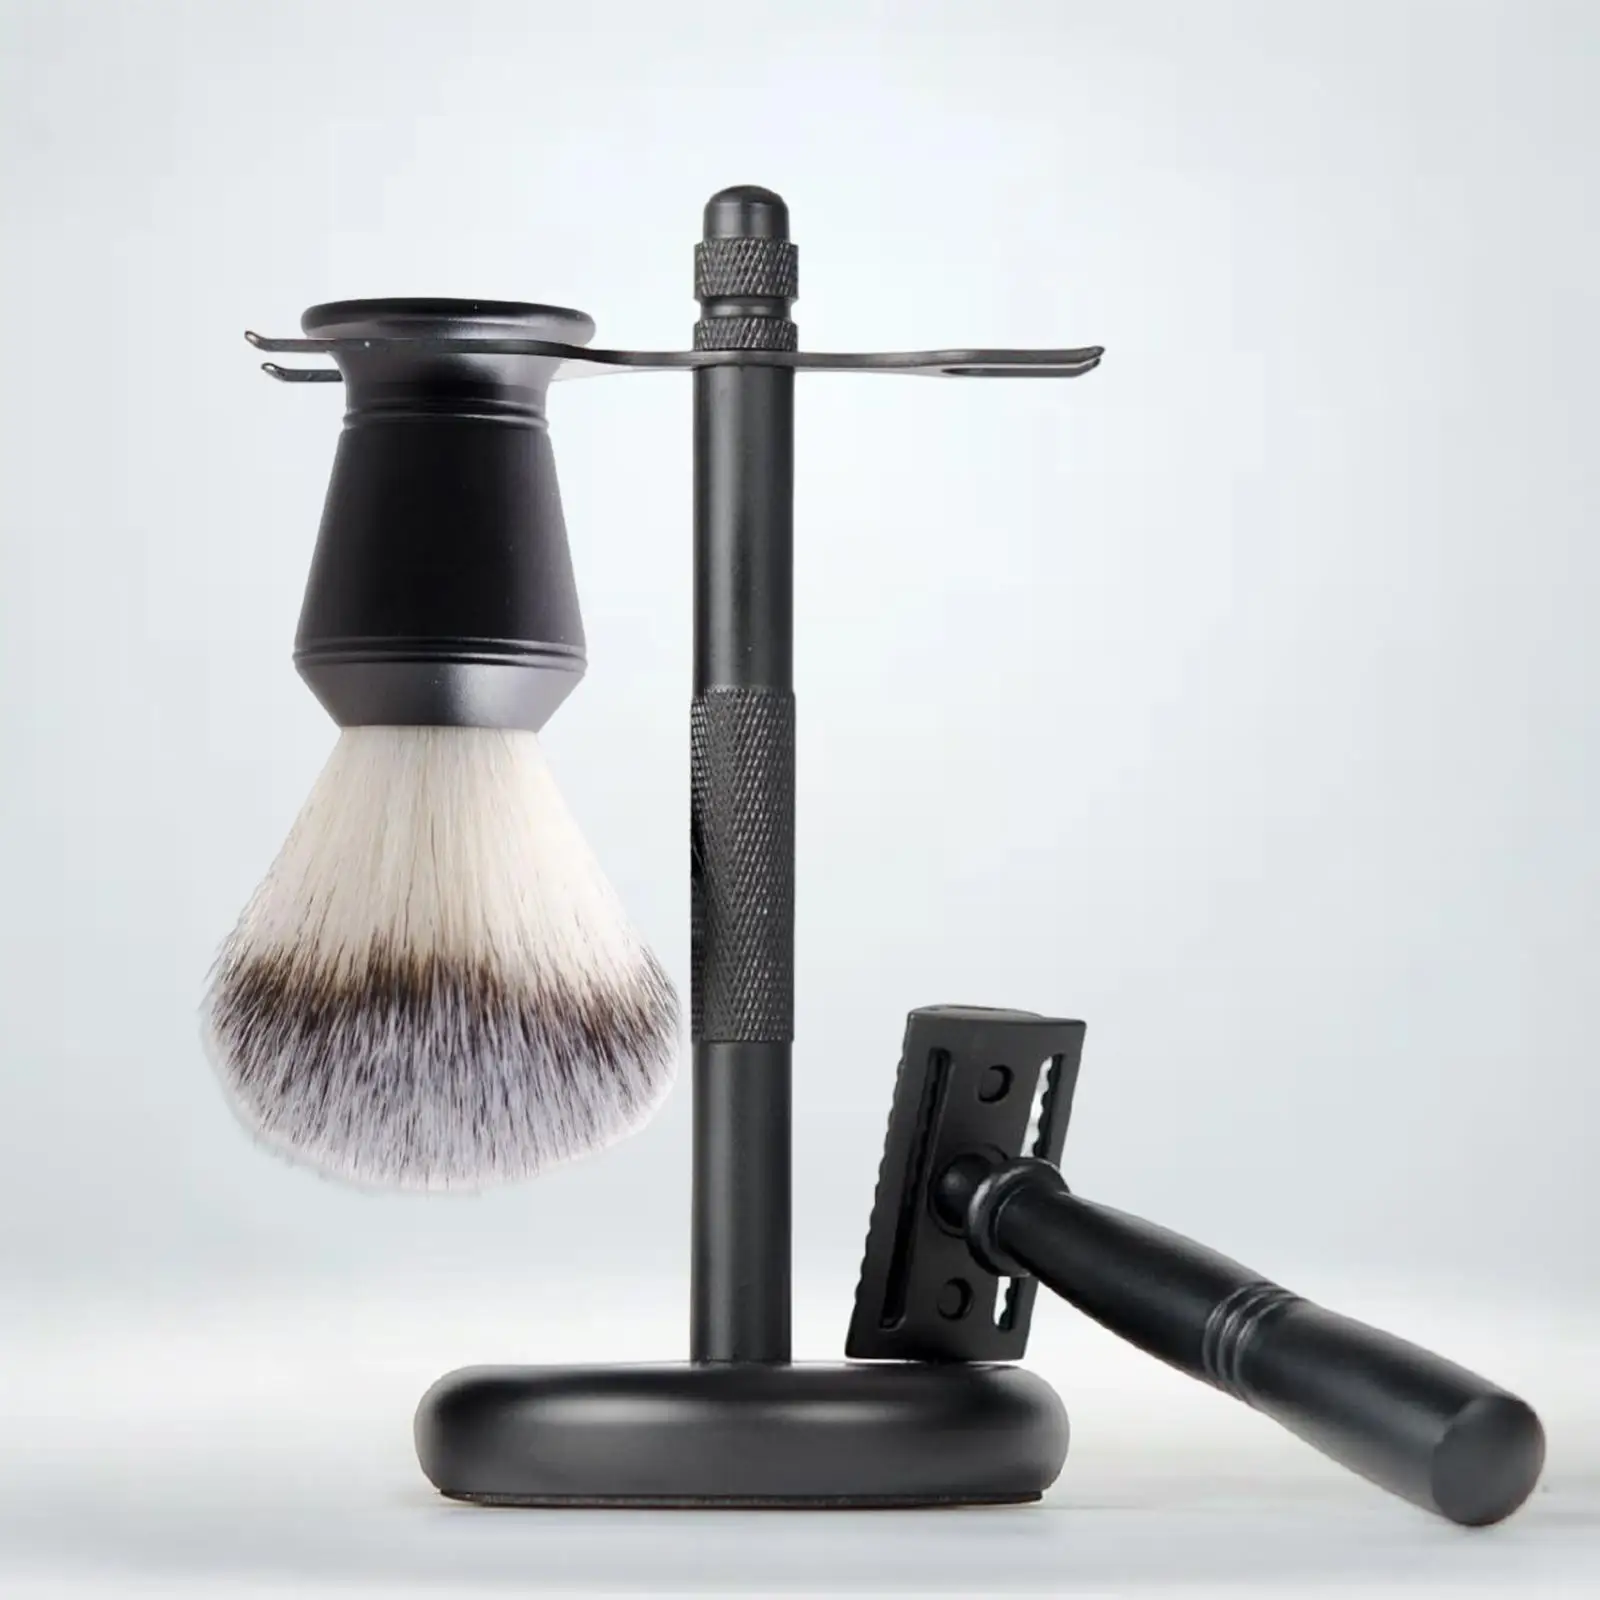 3x Shaving Set Black Color Elegant Shaving Brush Stand Set Shaving Razor+ Stand Holder +shaving Brush Set Father`s Day Gifts